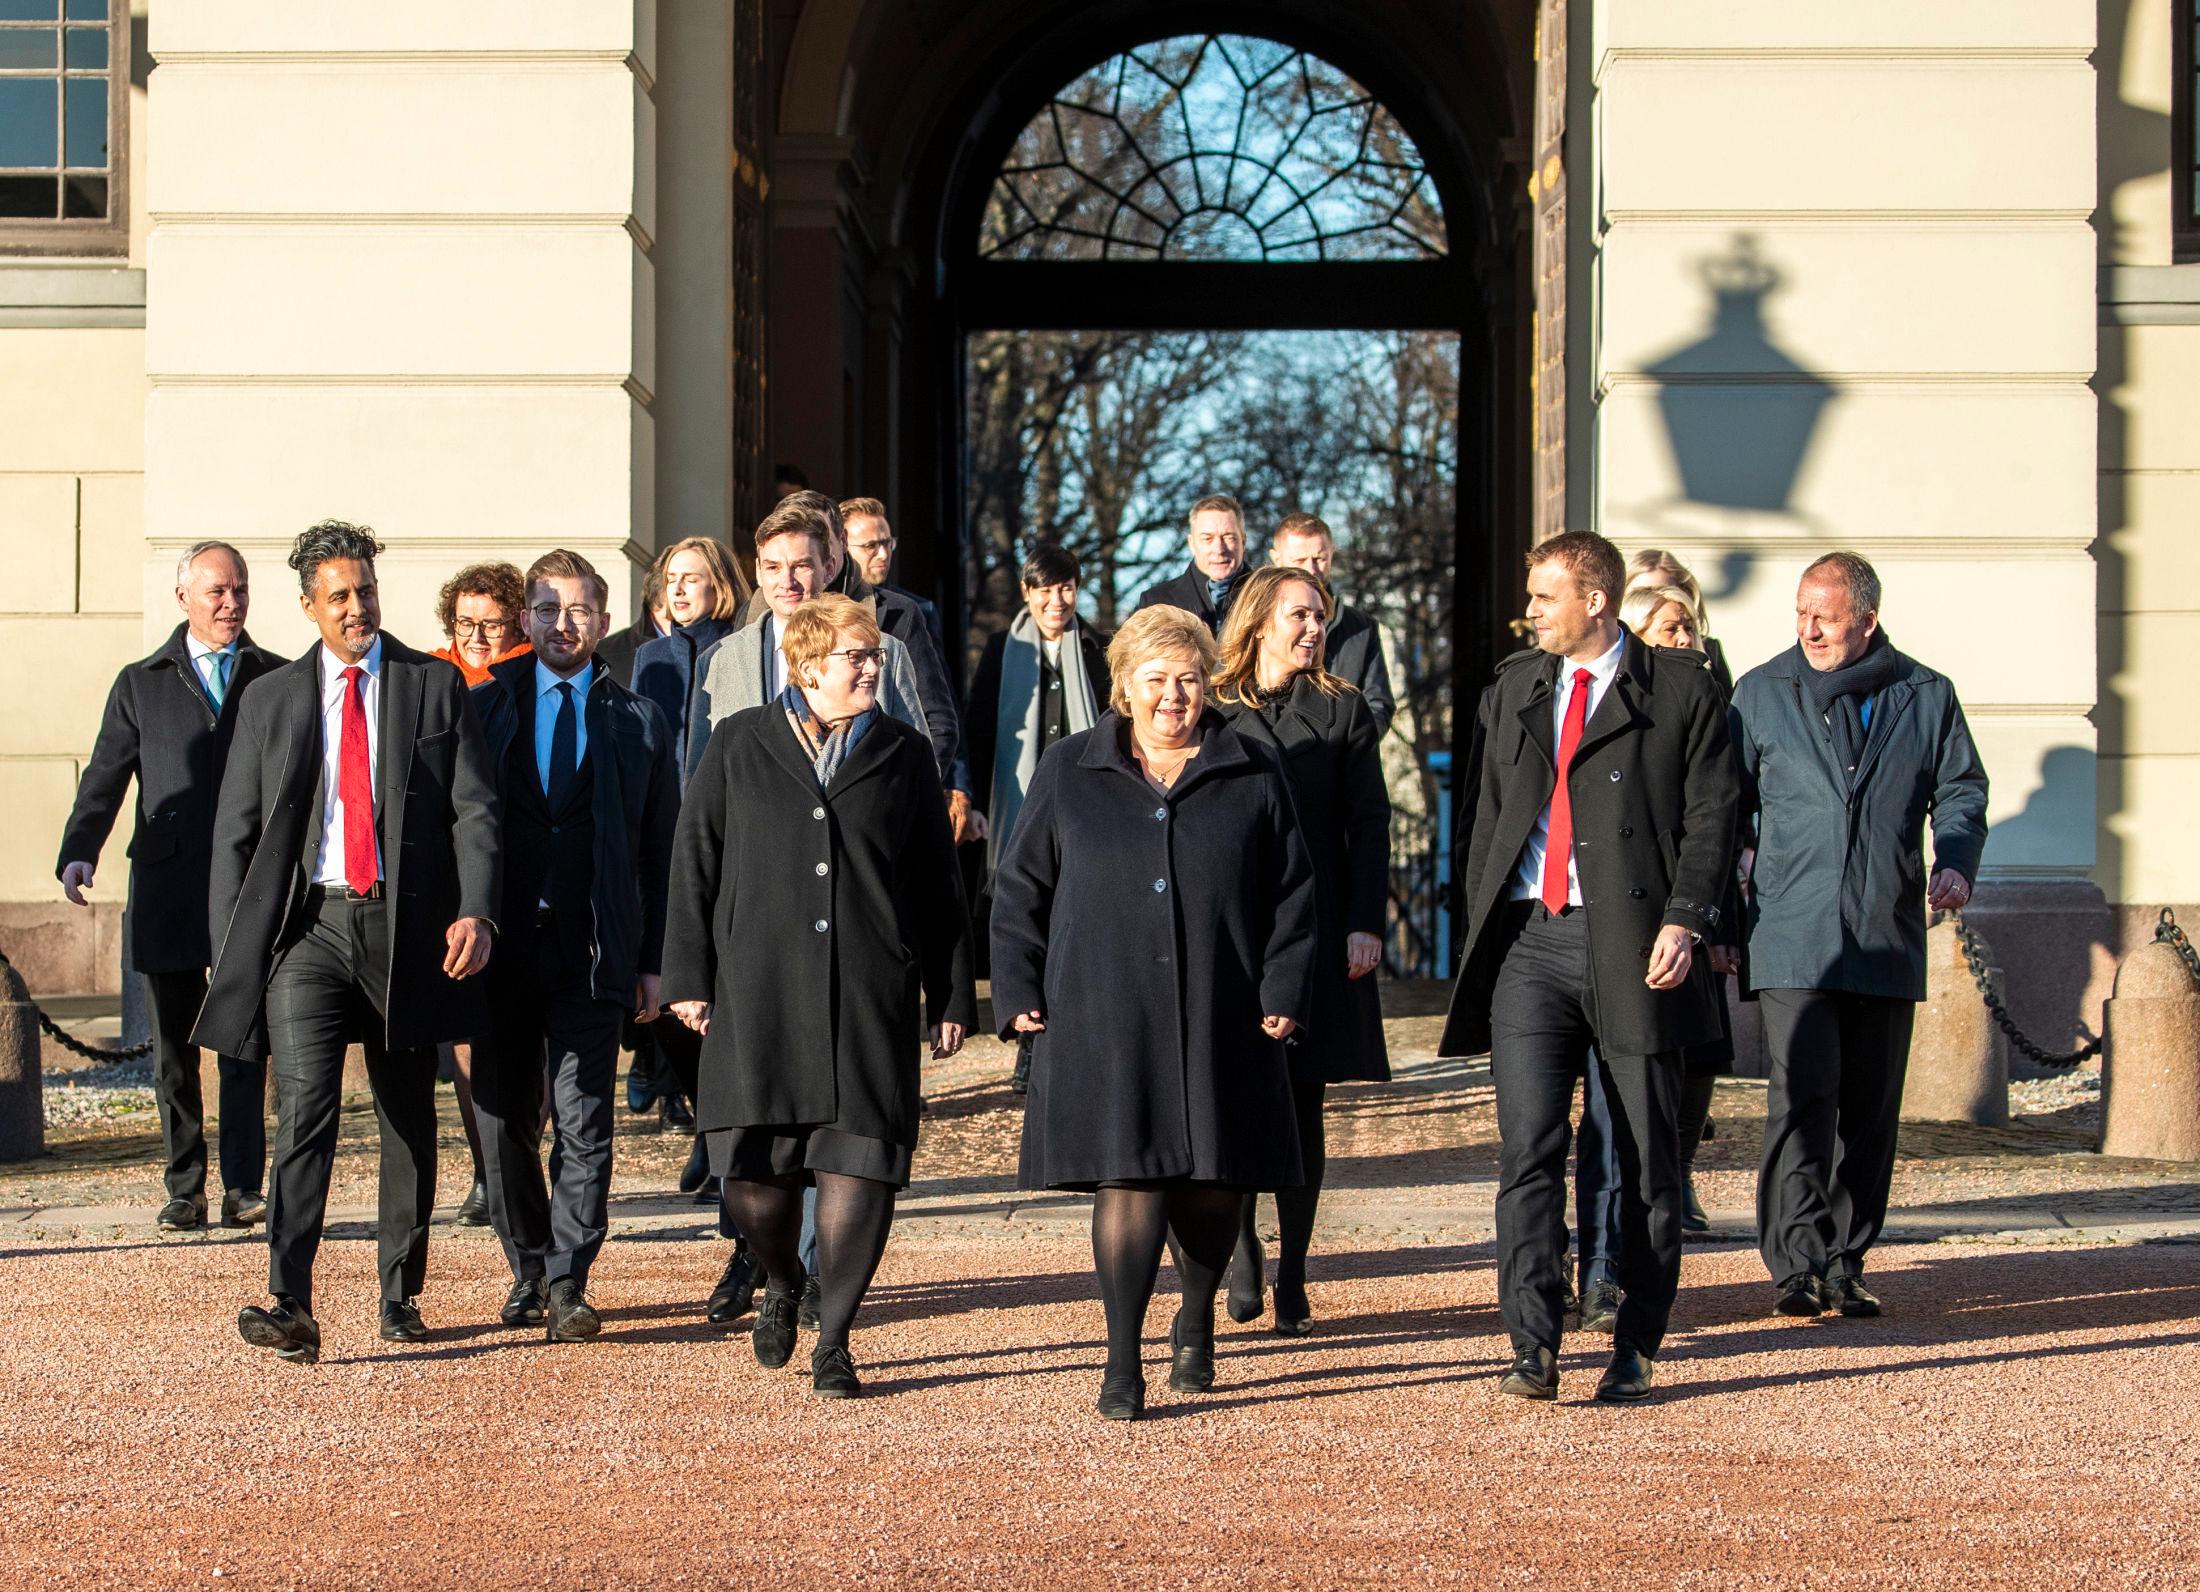 LIK GJENG: Det var ikke mye farger å spore da statsminister Erna Solberg (H) presenterte sin regjering. FOTO: TORE KRISTIANSEN, VG